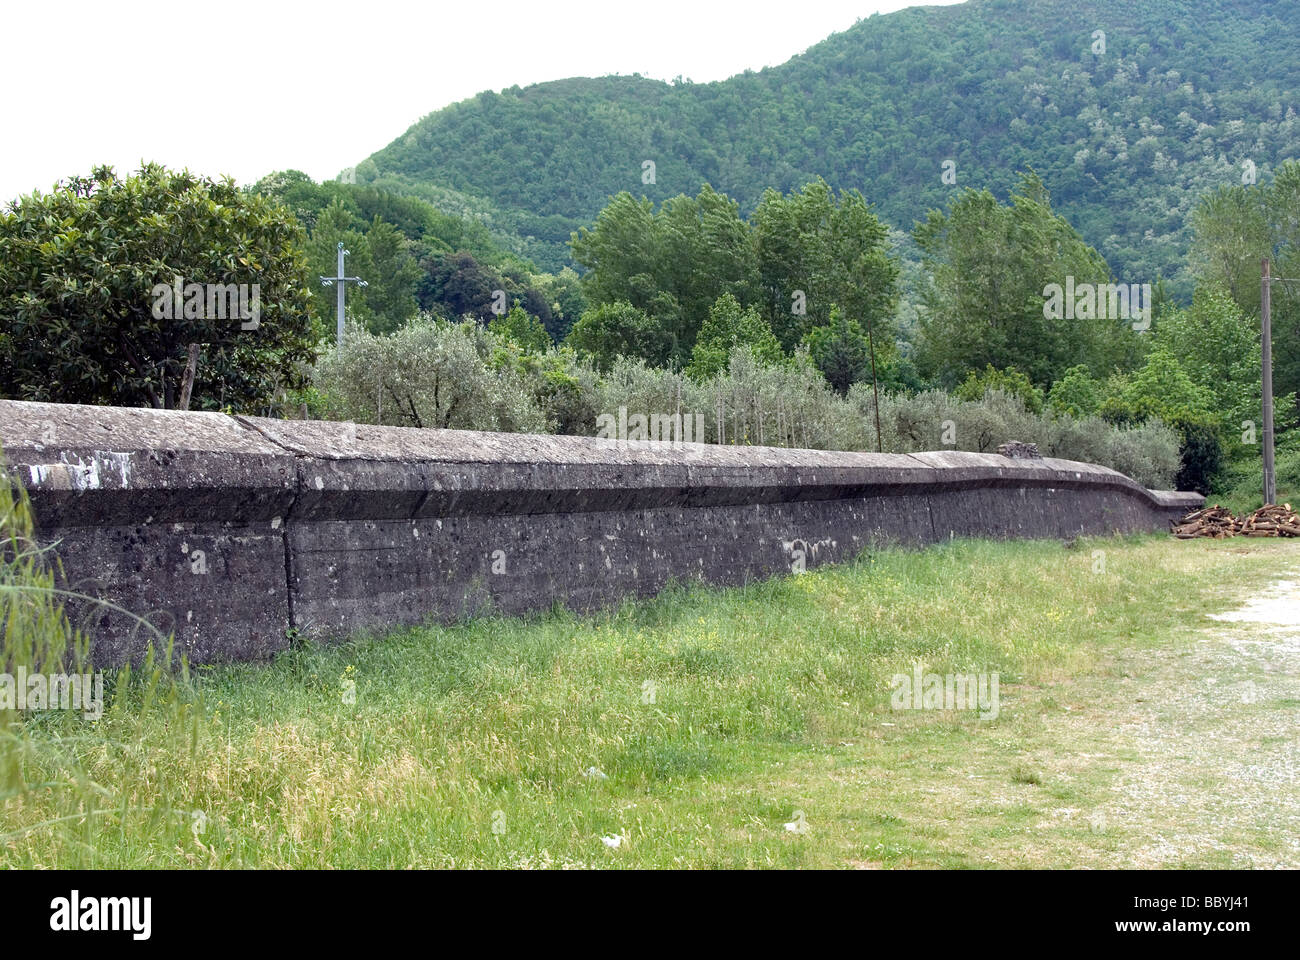 Muro de piedra que representa la línea gótica, línea defensiva alemana contra la arremetida aliada en la Segunda Guerra Mundial Foto de stock